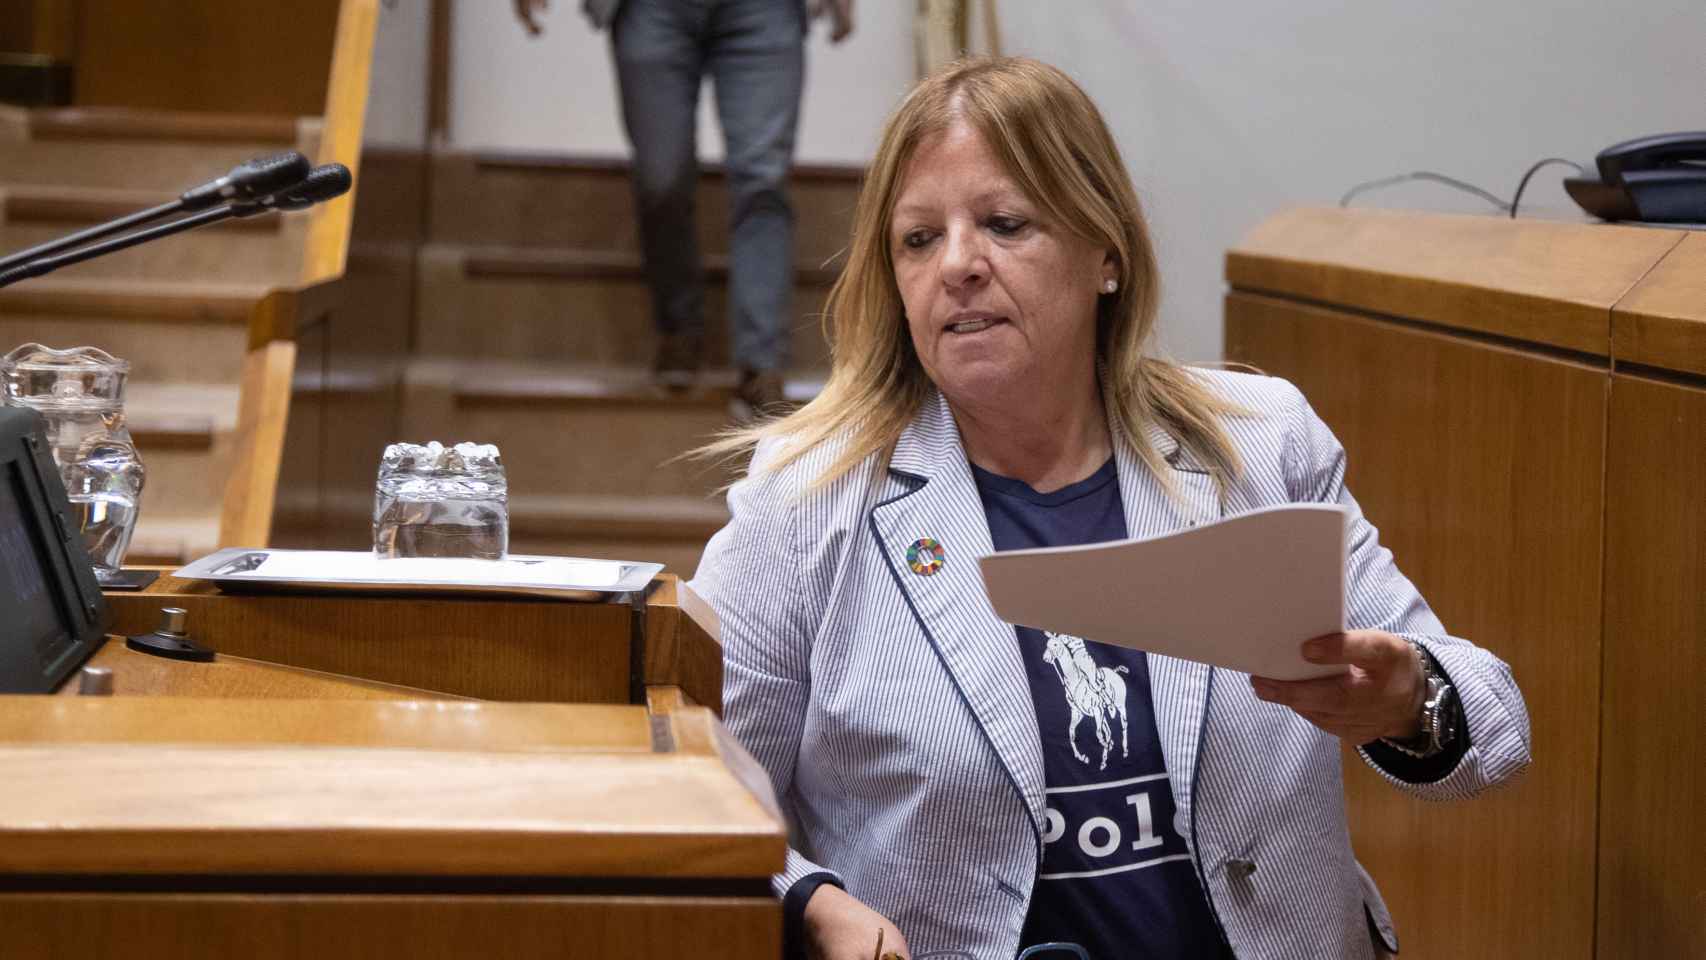 La parlamentaria del PSE-EE, Miren Gallástegui, durante este jueves durante el pleno del Parlamento vasco / Legebiltzarra